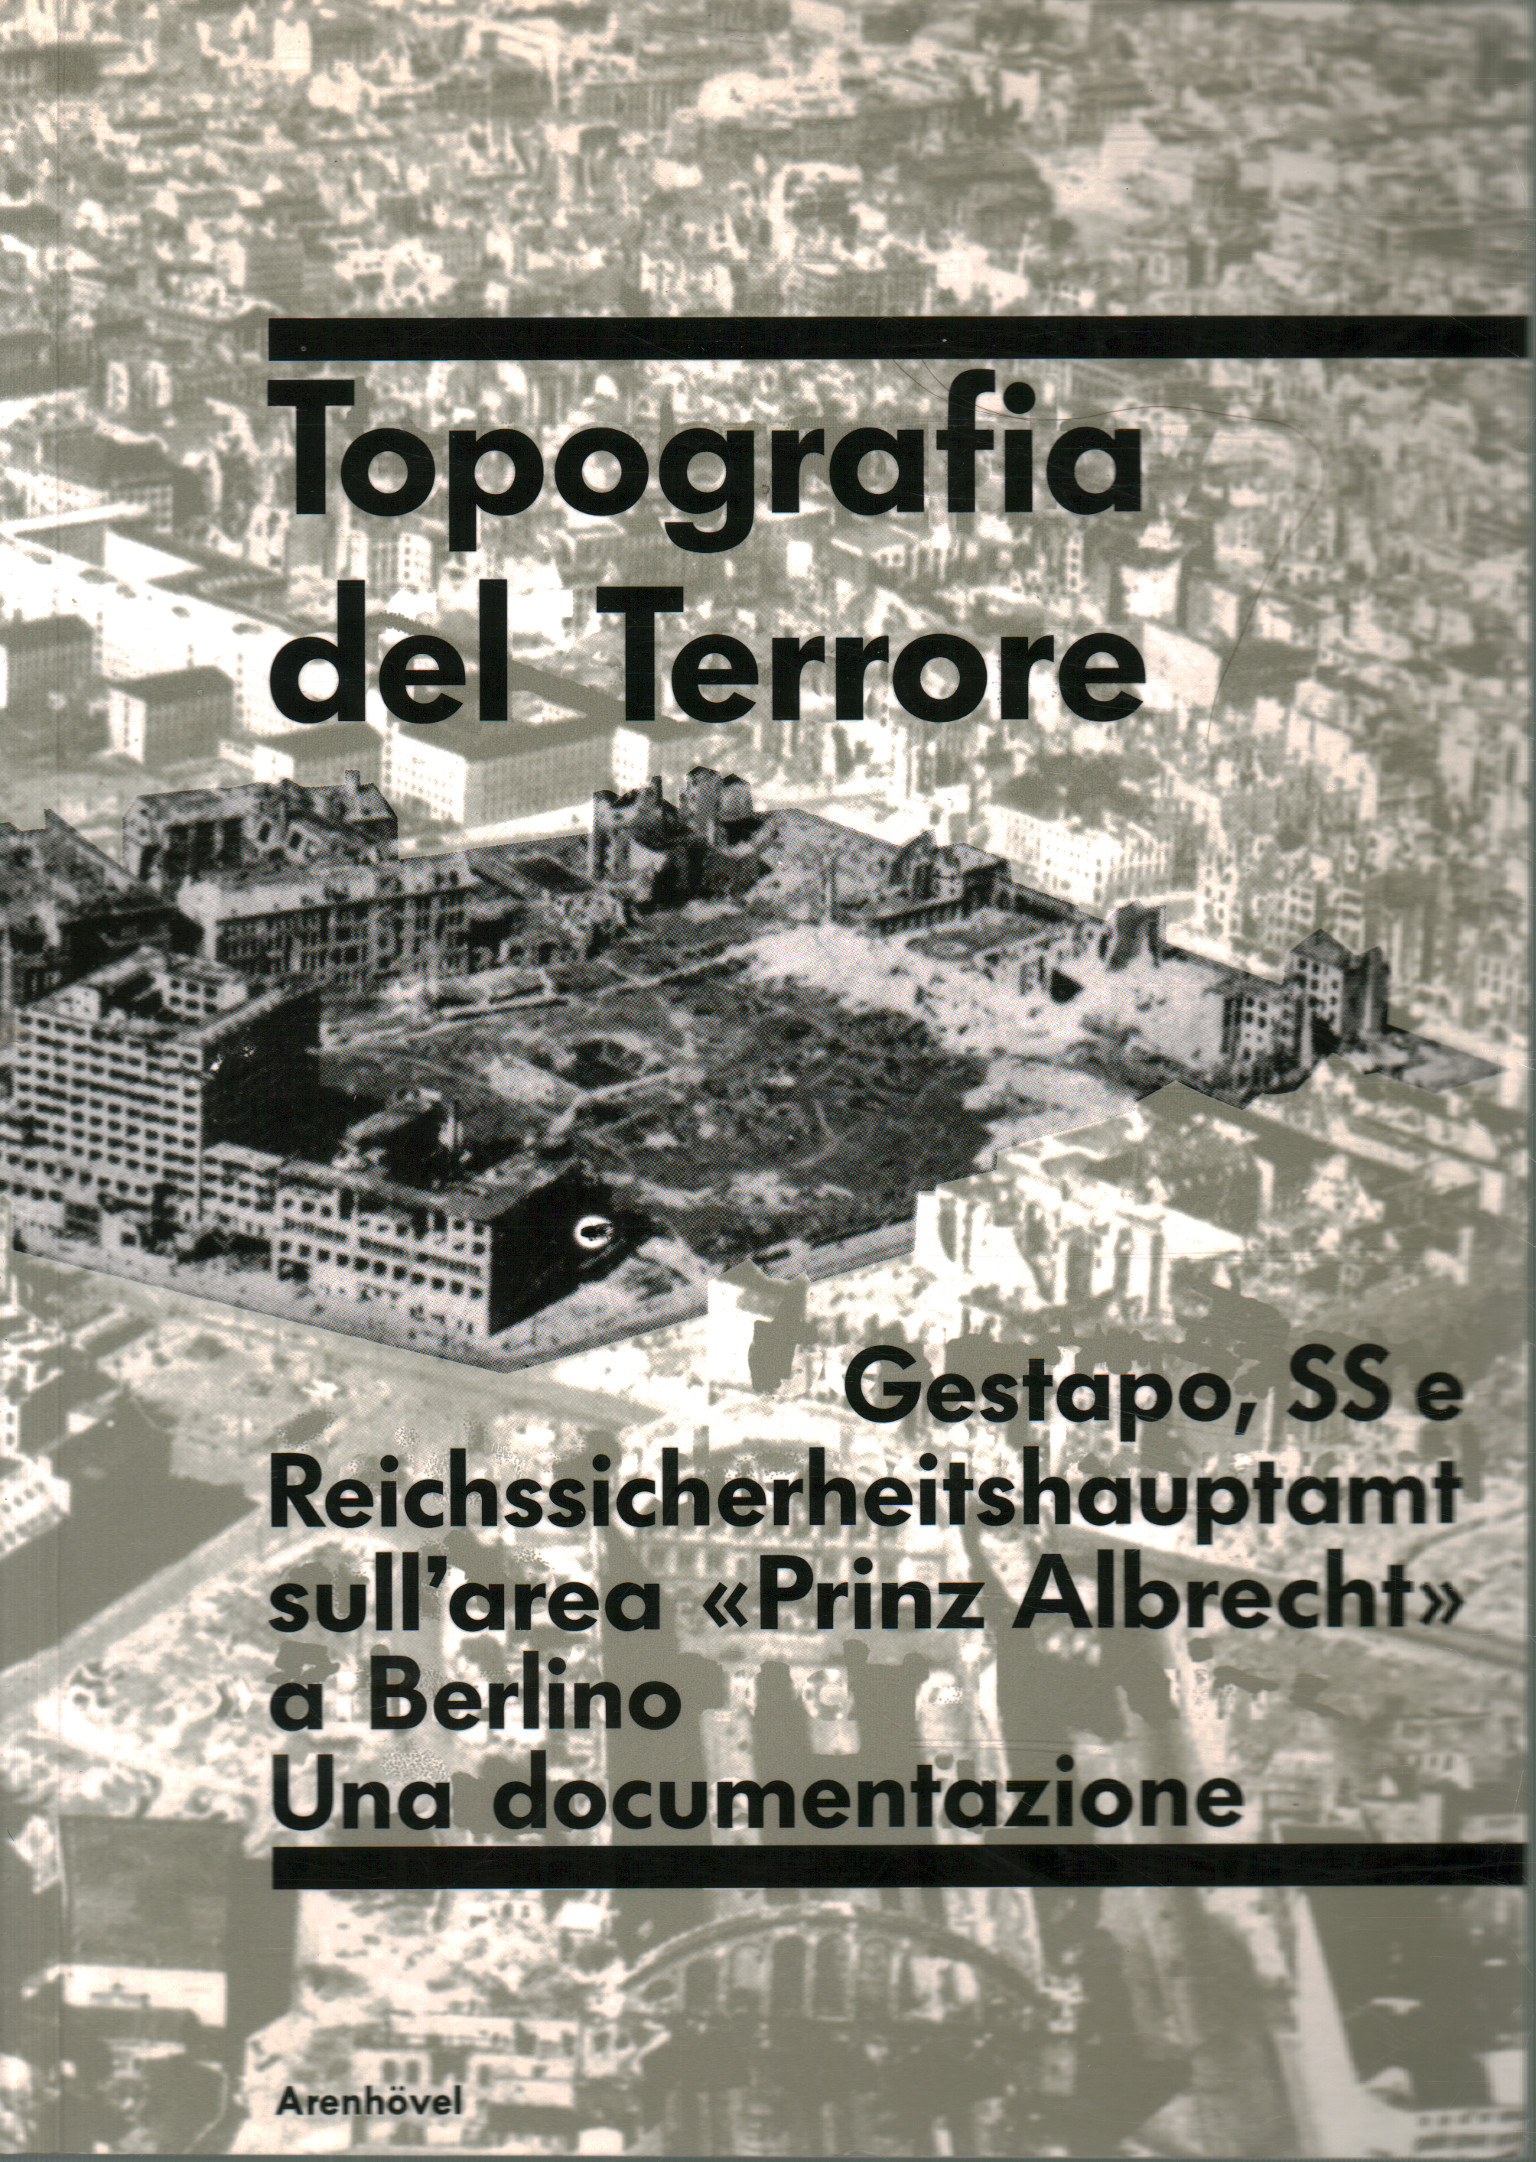 Topographie de la terreur, Reinhard Rurup